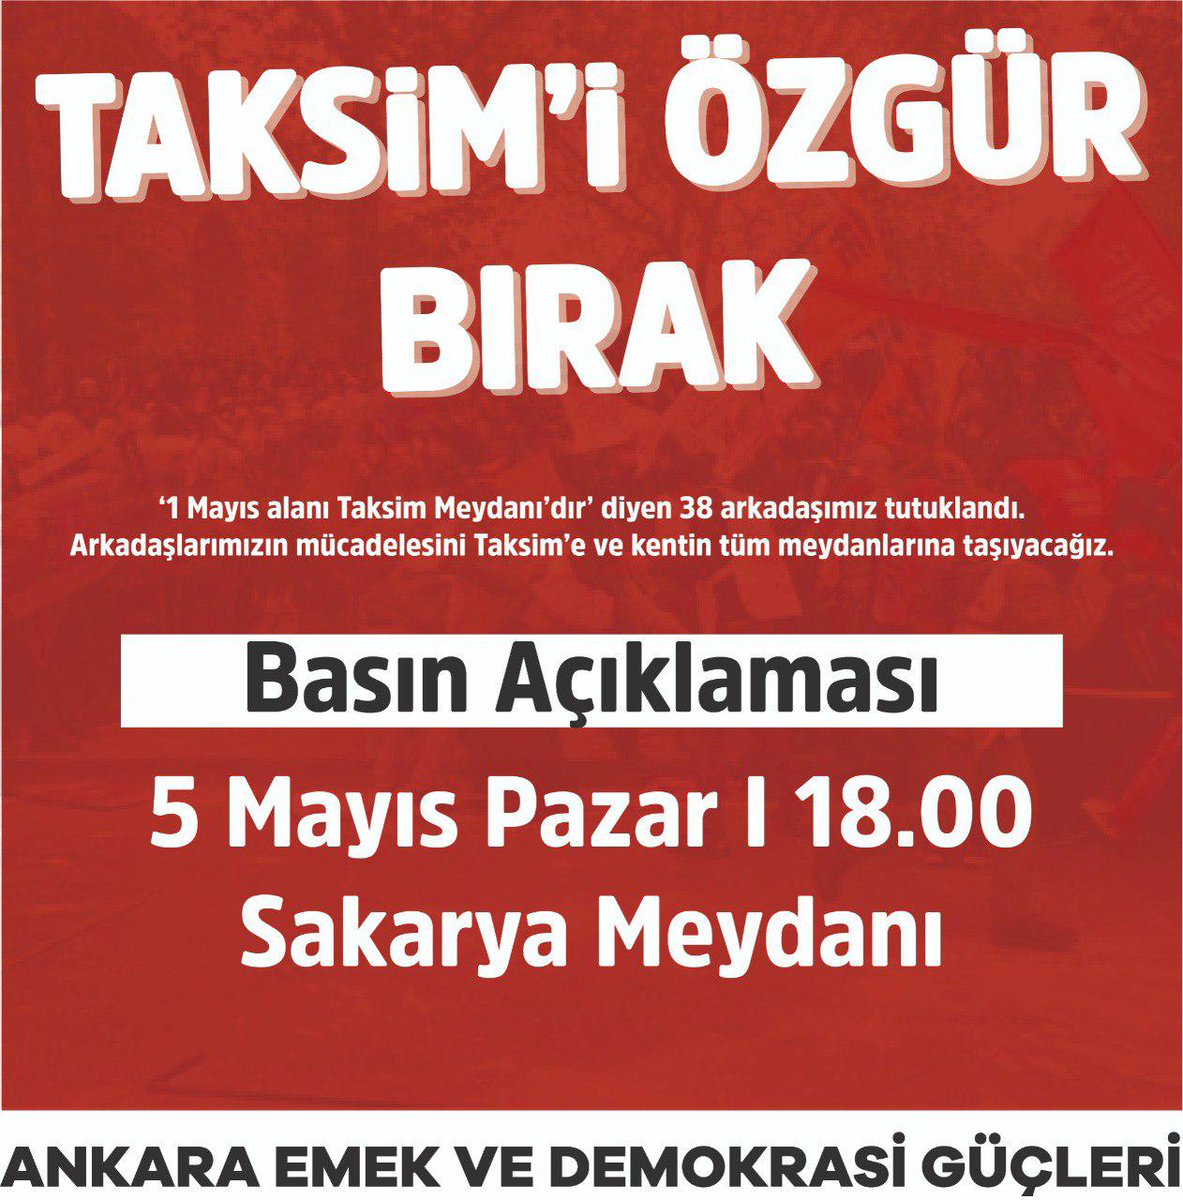 📢 Basın Açıklaması / Sakarya Meydanı 1 Mayıs alanı Taksim Meydanıdır! Gözaltılar, tutuklamalar, baskılar bizi yıldıramaz! #TaksimiÖzgürBırak 🗓️5 Mayıs Pazar 🕑18.00 📍 Sakarya Meydanı